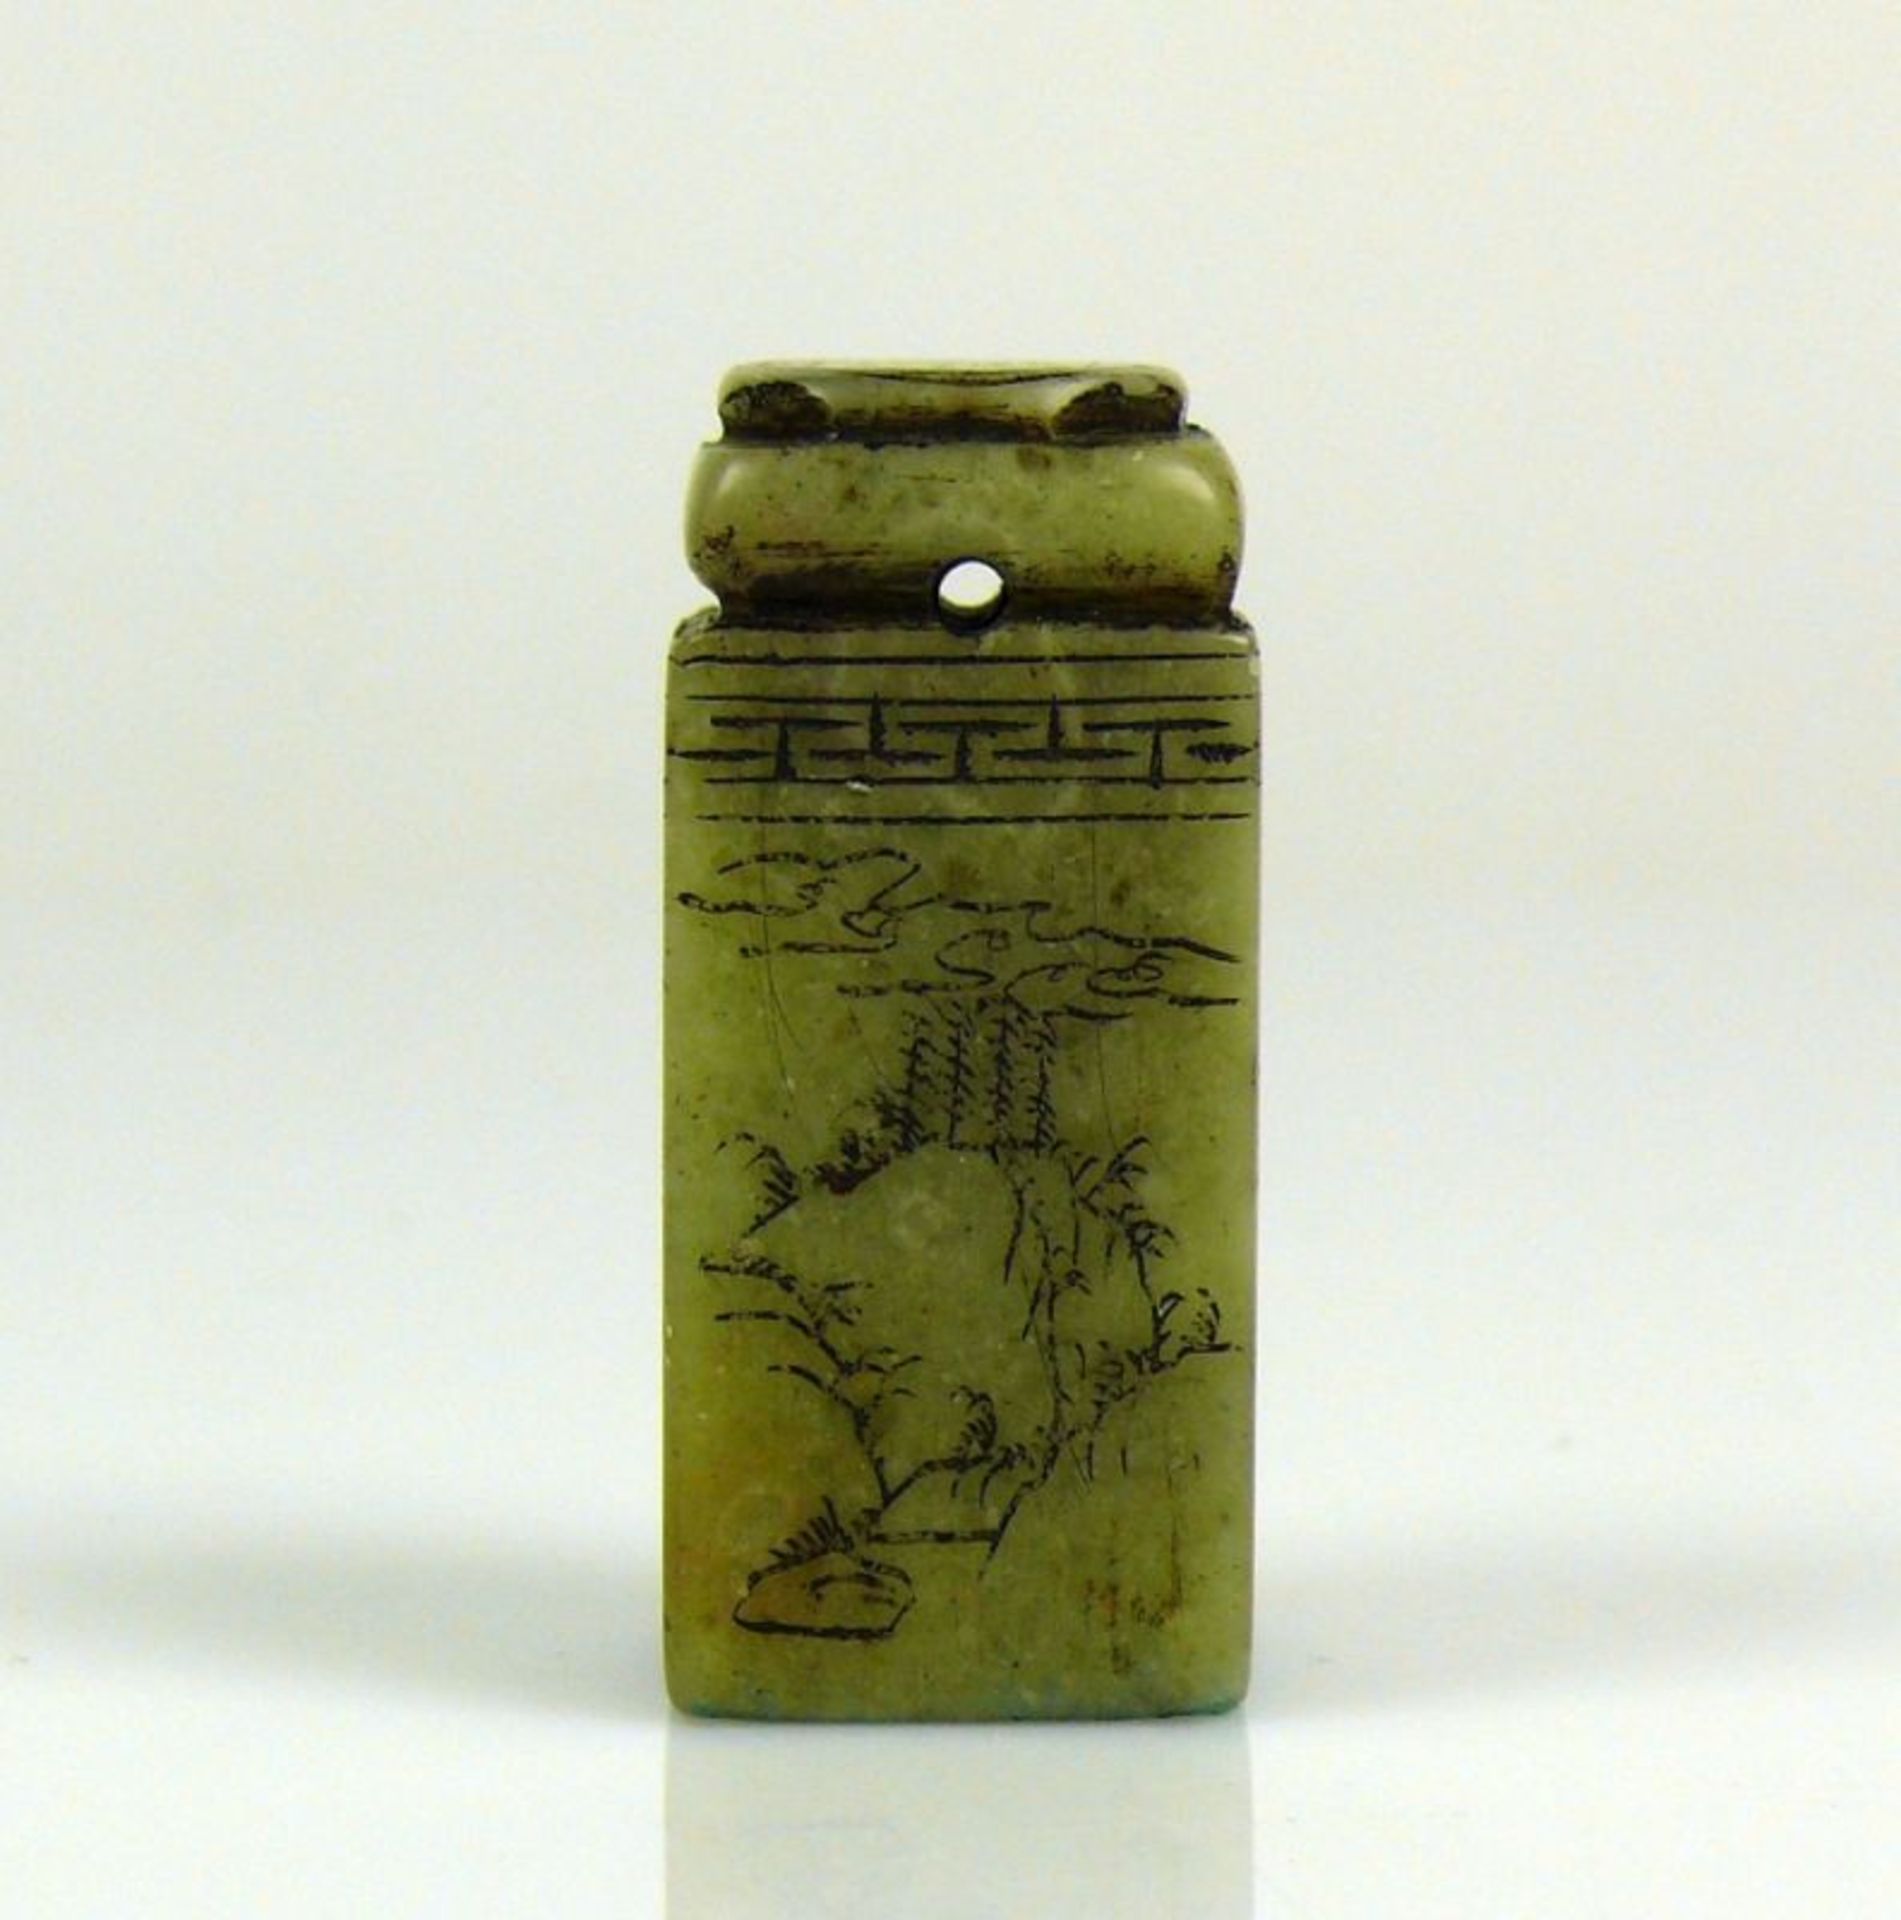 Petschaft hellgrüner Stein mit ziselierter Beschriftung und Floraldekor; Höhe: ca 5 cm - Bild 3 aus 7